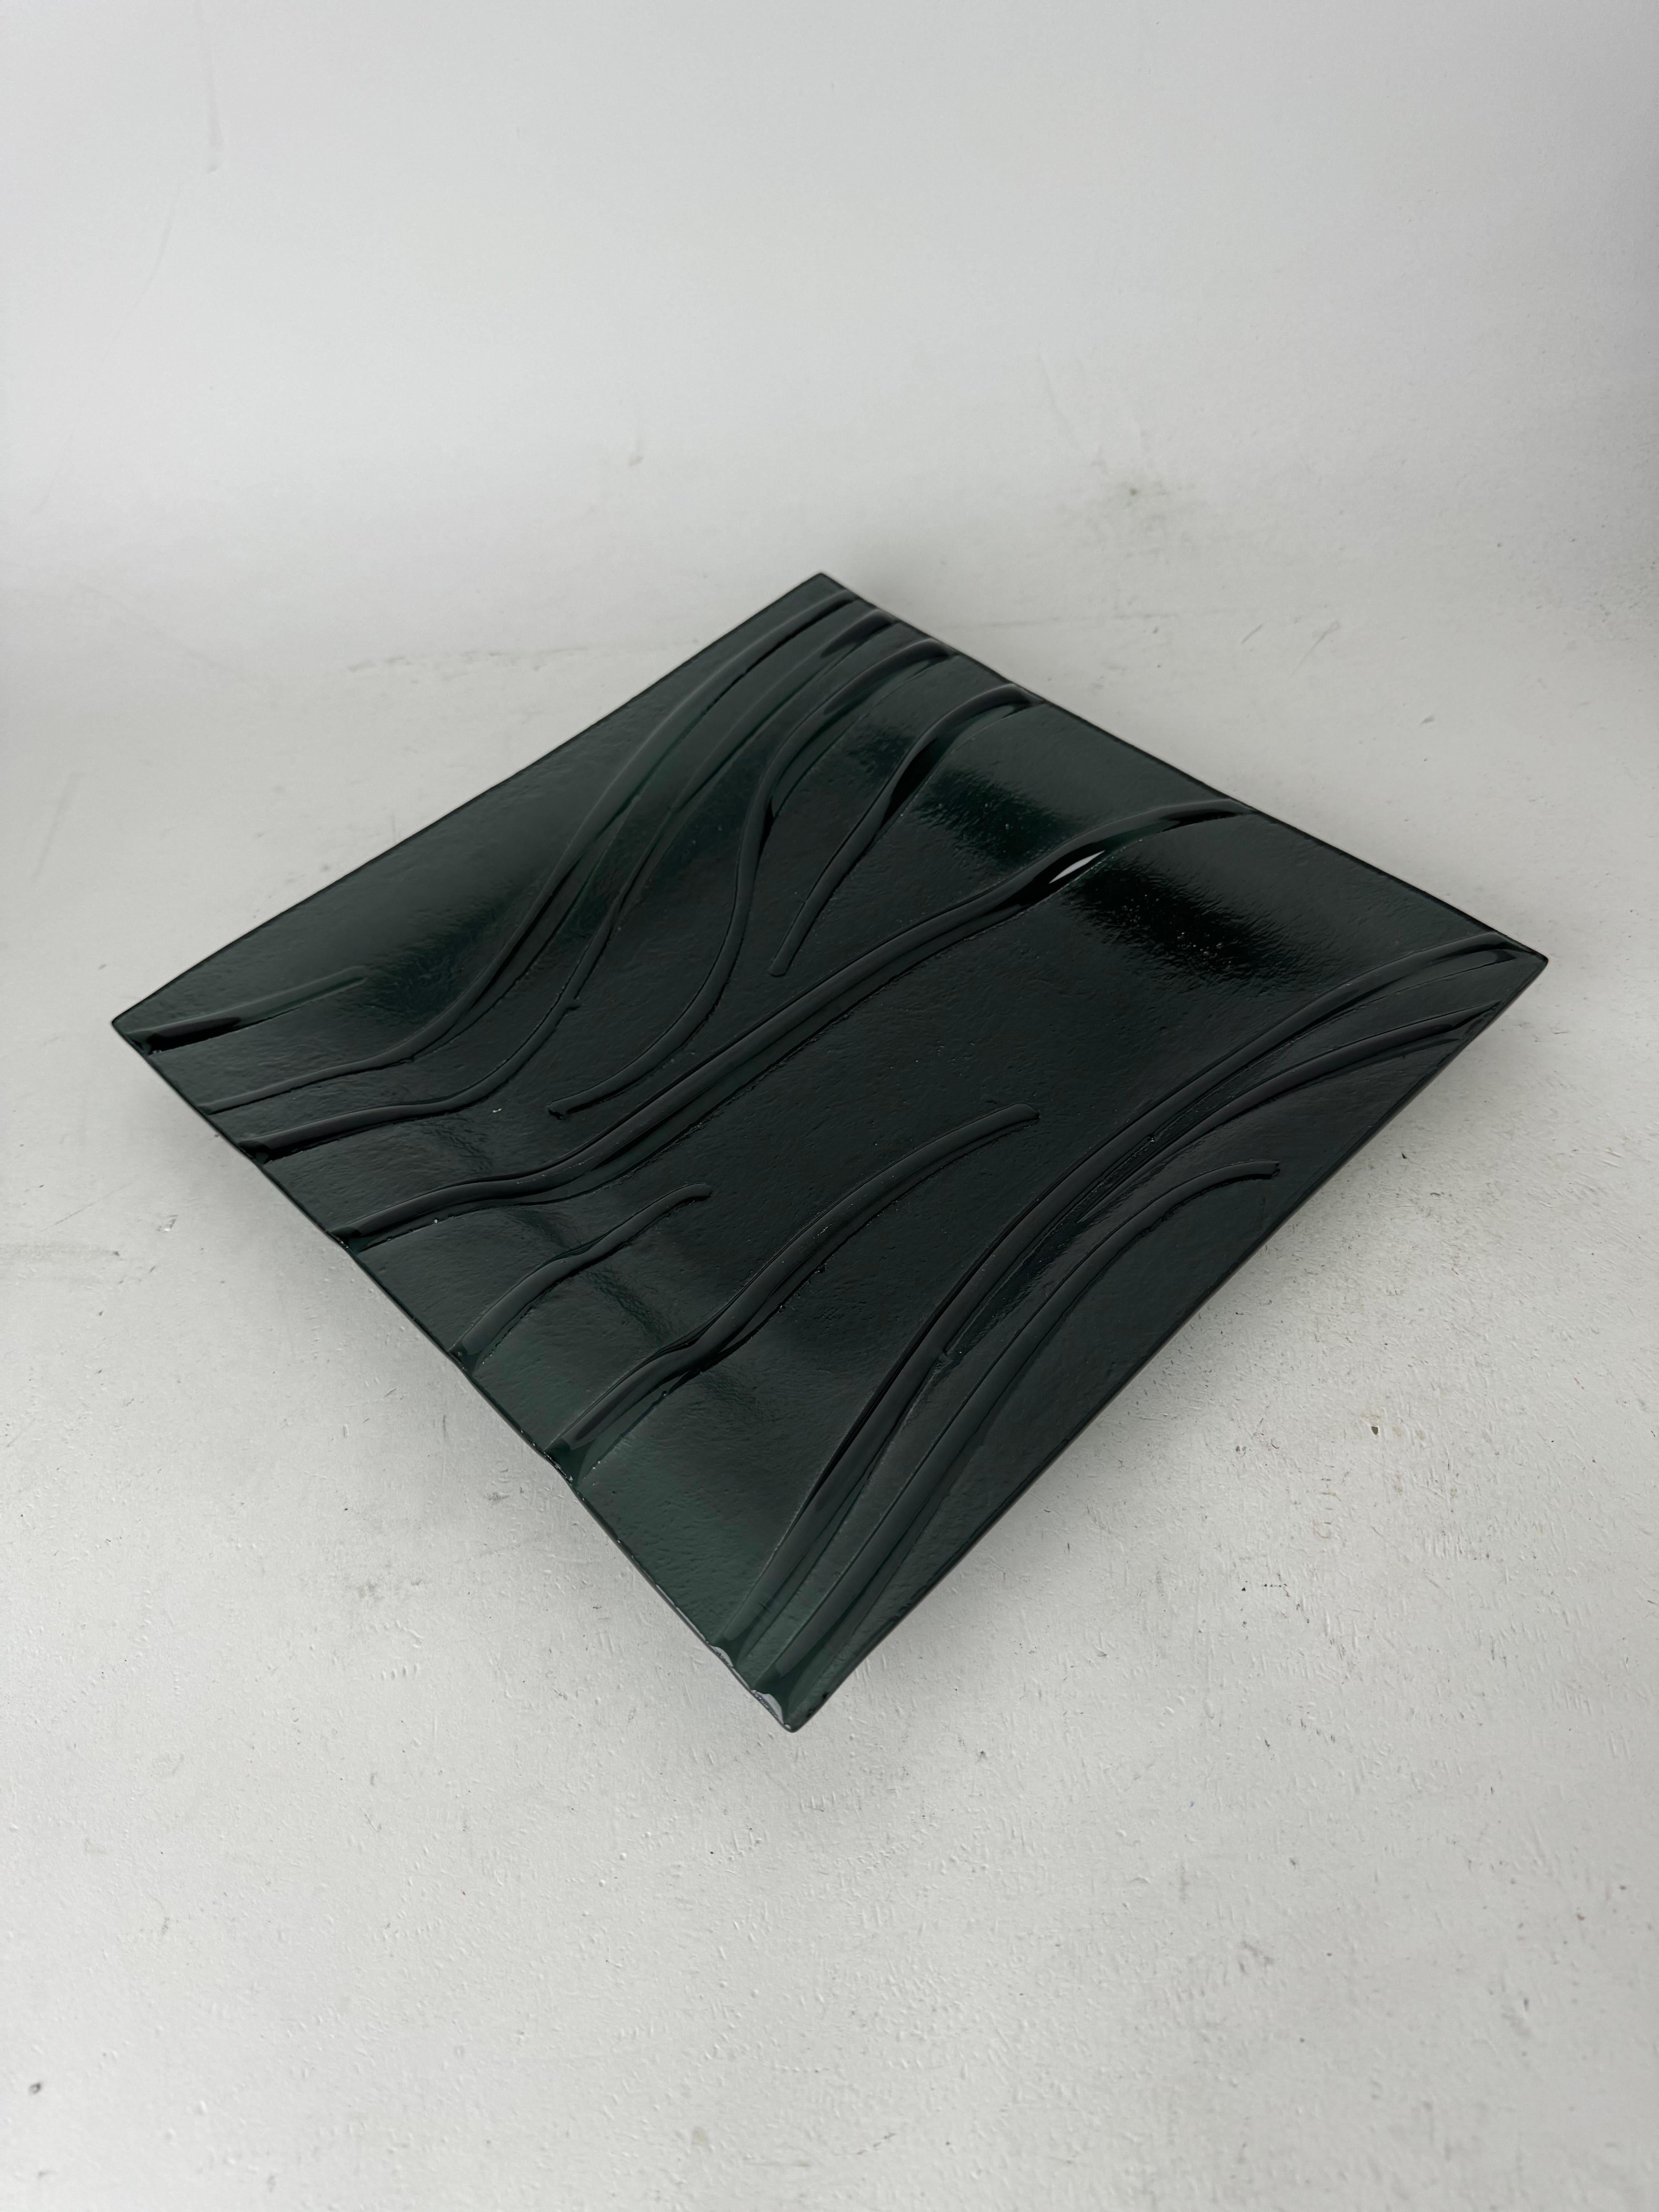 ✨ Erhöhen Sie Ihre Einrichtung mit Eleganz: Signierter schwarzer Kunstglasteller ✨

Setzen Sie mit dieser auffälligen schwarzen Kunstglasplatte mit einem faszinierenden Reliefmuster ein markantes Zeichen in Ihrem Wohnbereich. Dieses Meisterwerk ist